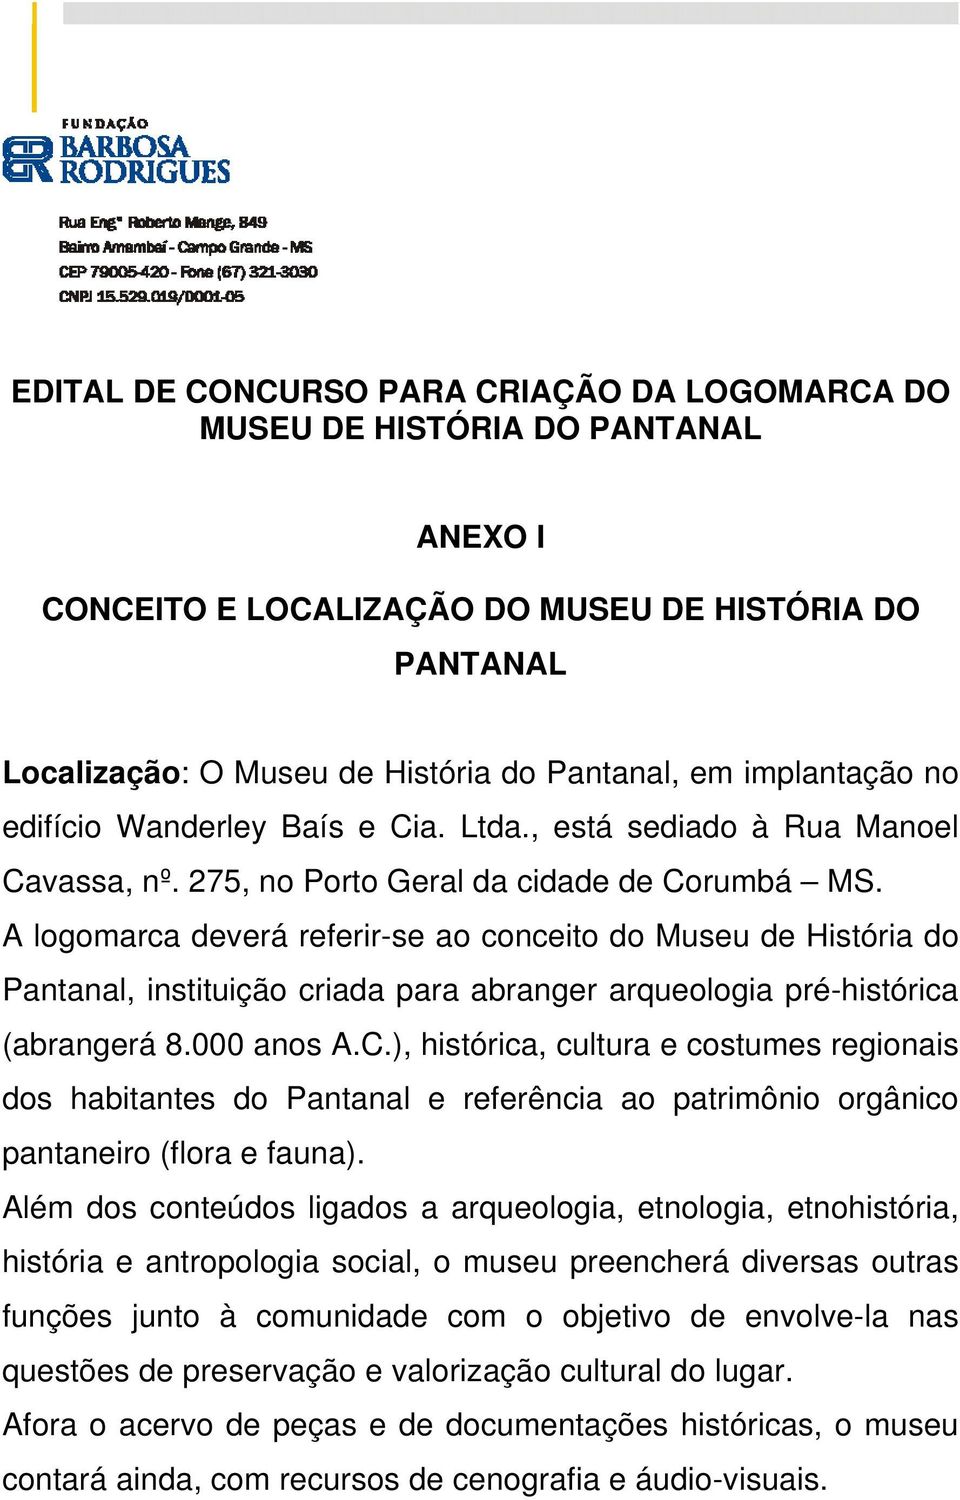 A logomarca deverá referir-se ao conceito do Museu de História do Pantanal, instituição criada para abranger arqueologia pré-histórica (abrangerá 8.000 anos A.C.